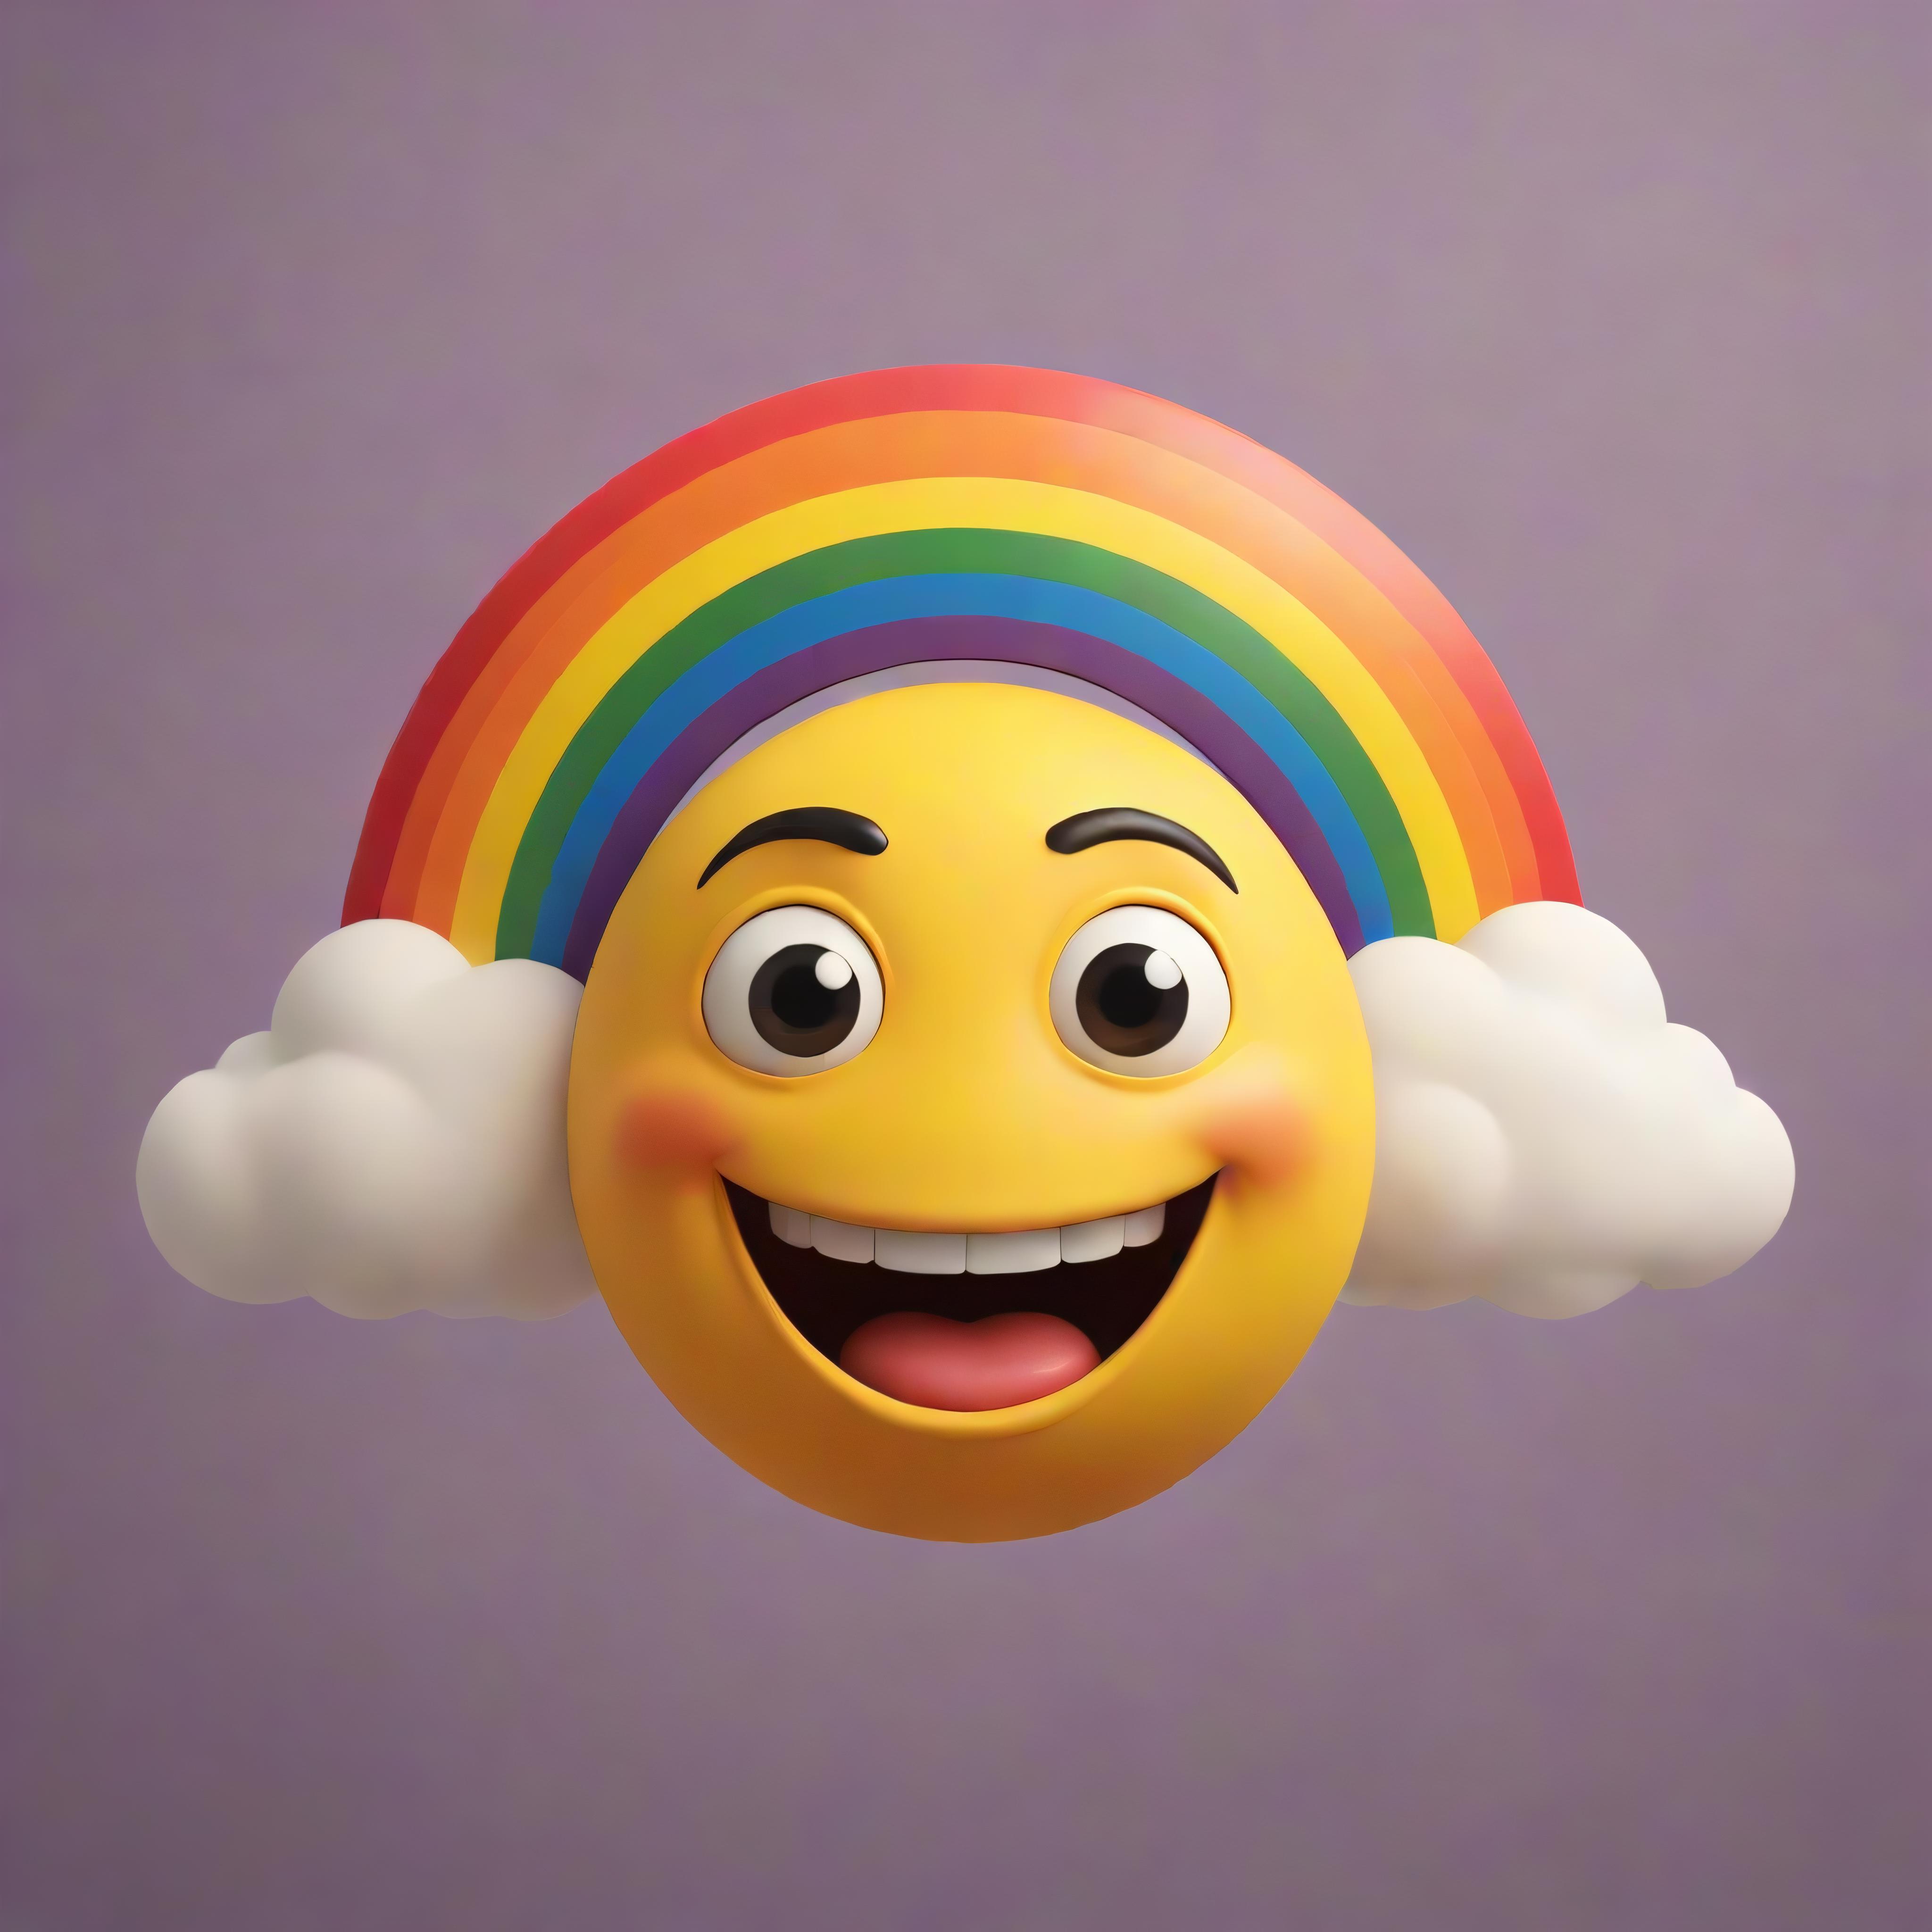 Emojis image by patricktoba